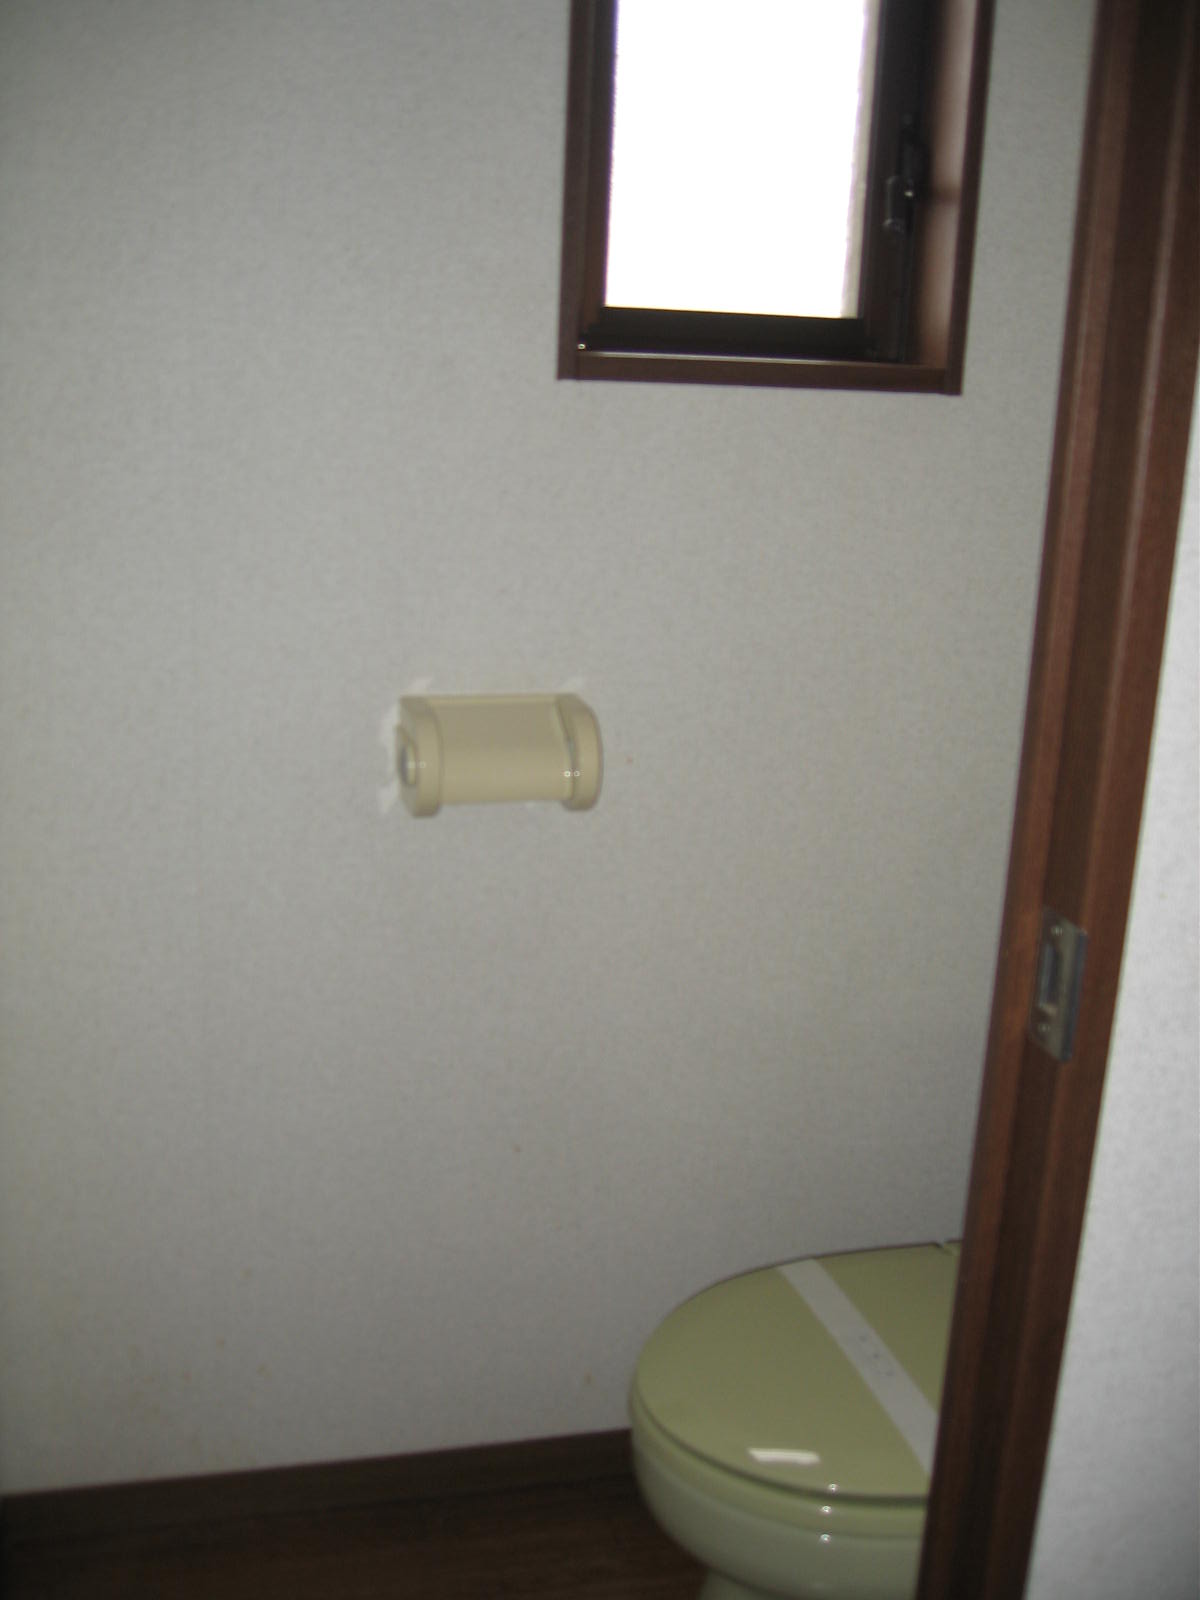 Toilet. With toilet window